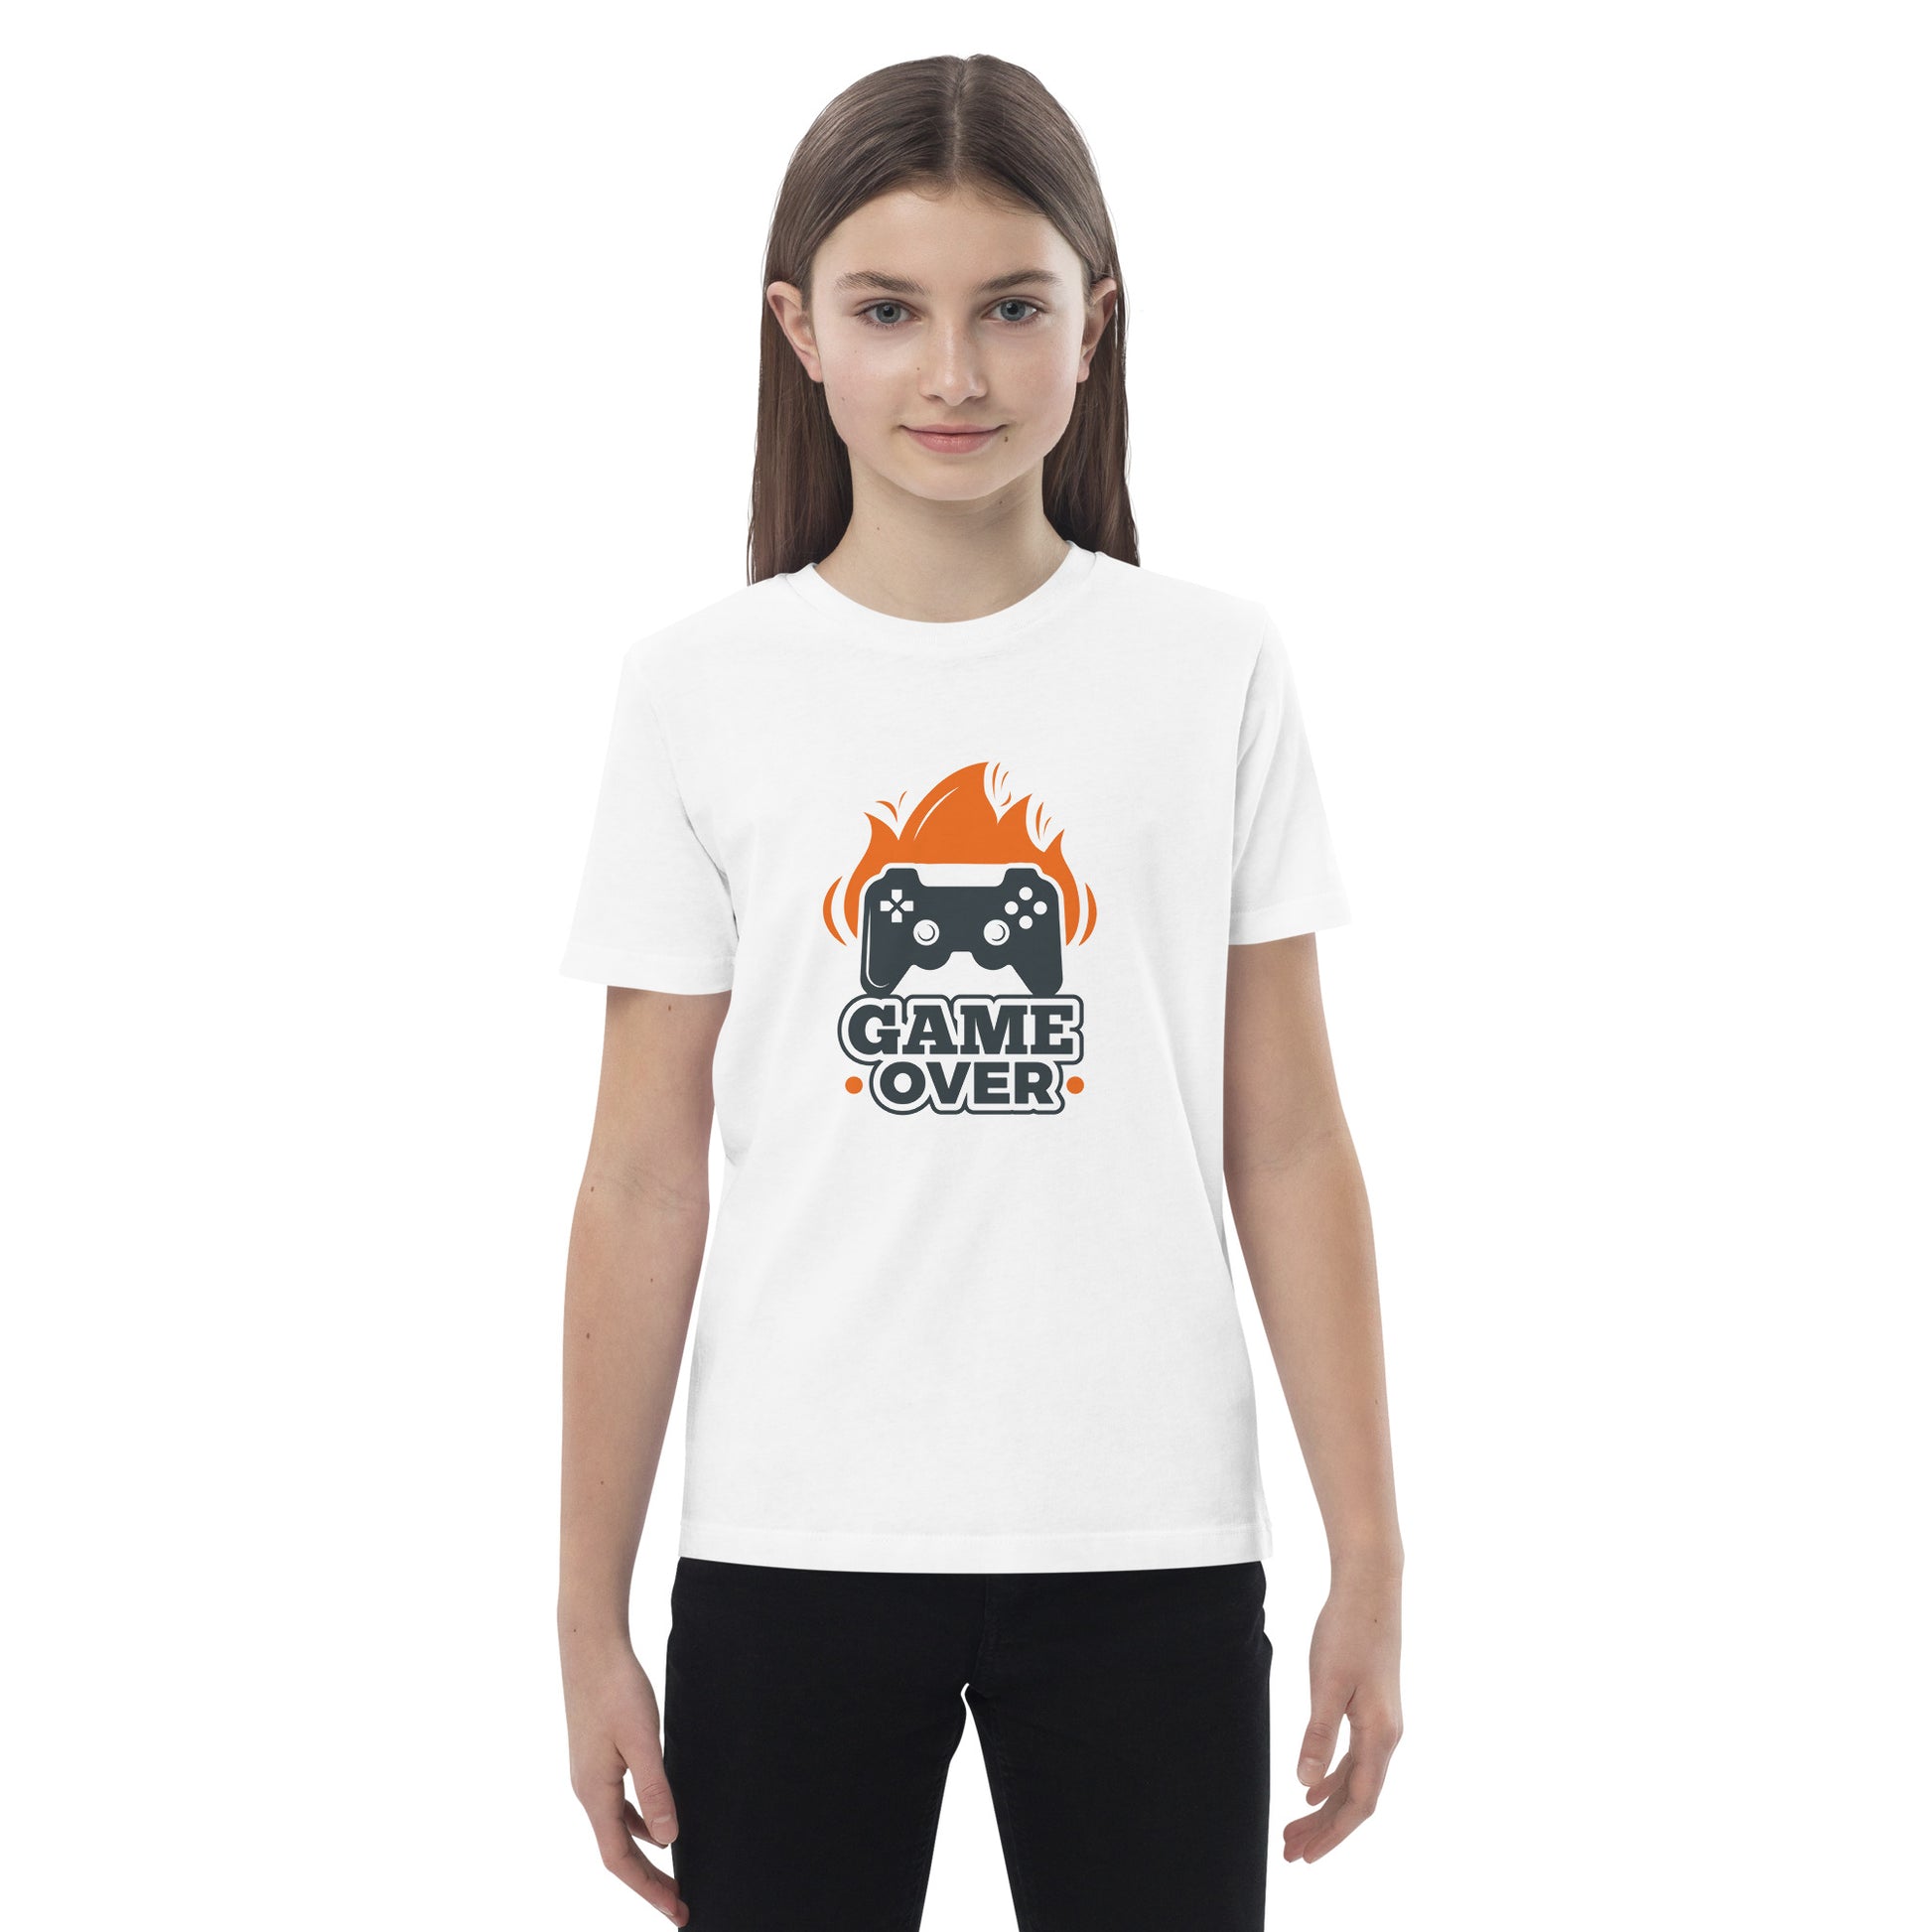 Game Over - Organic cotton kids t-shirt - HobbyMeFree